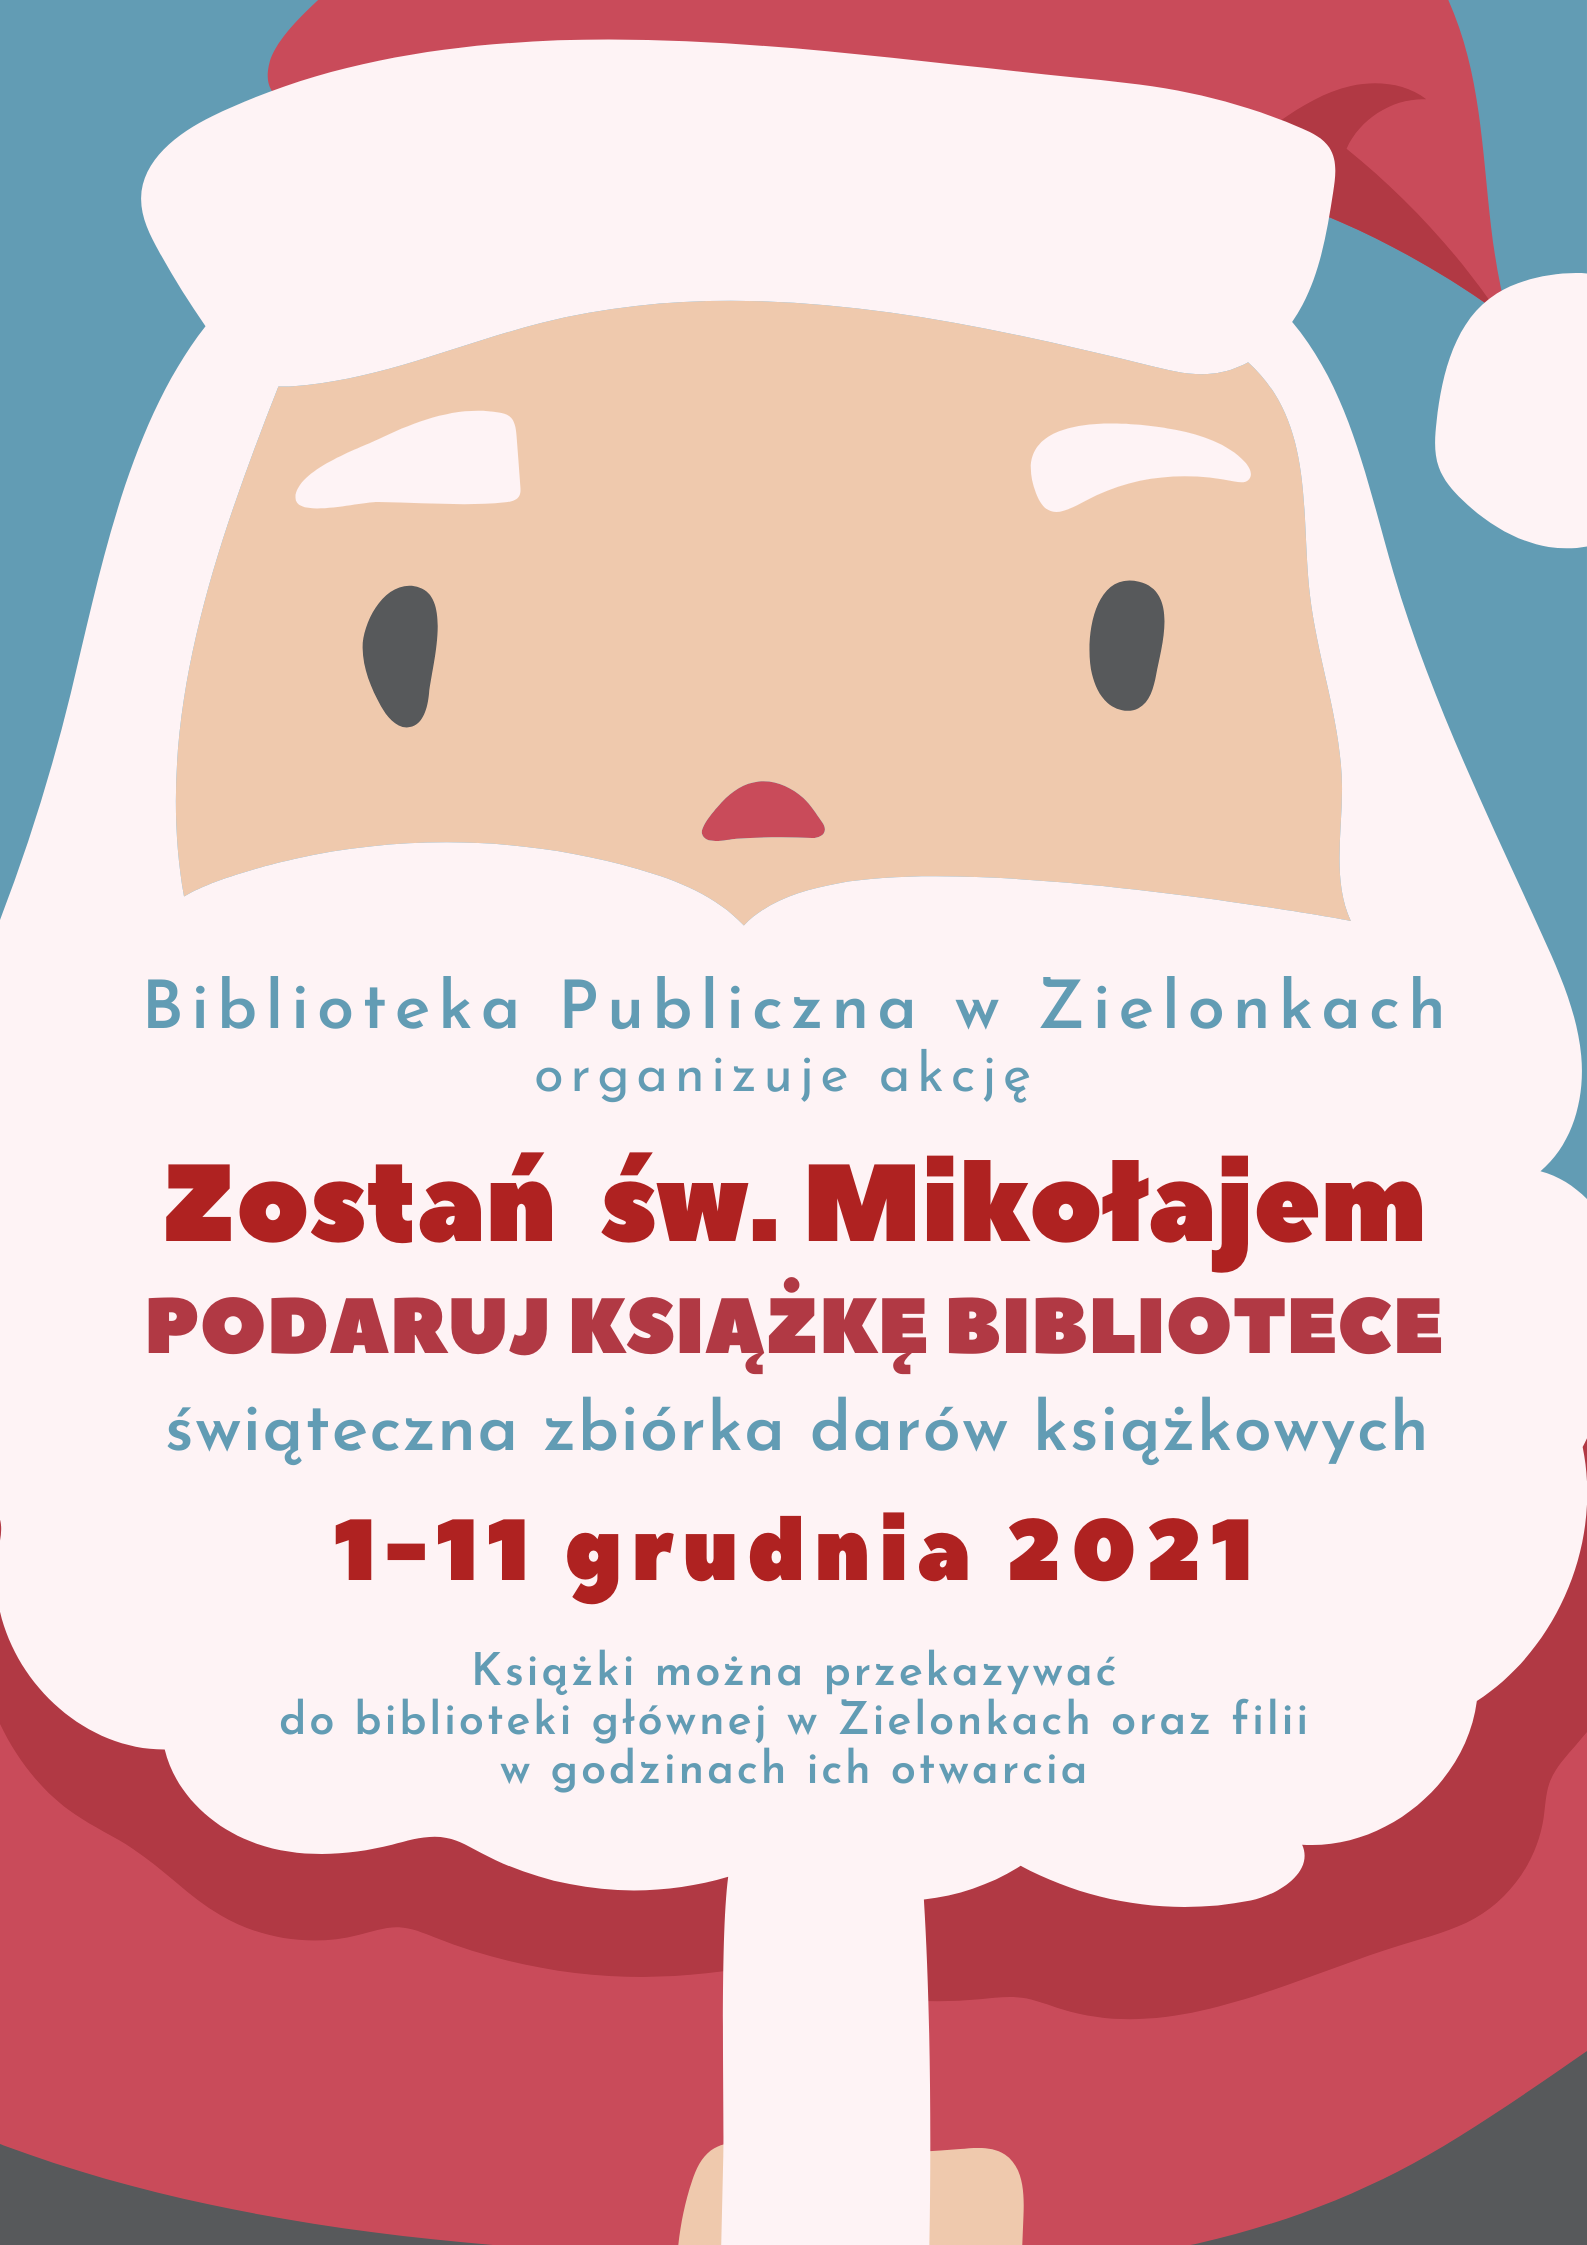 plakat z rysunkiem świętego Mikołaja, na brodzie postaci wypisane są informacje o możliwości podarowania książek do biblioteki